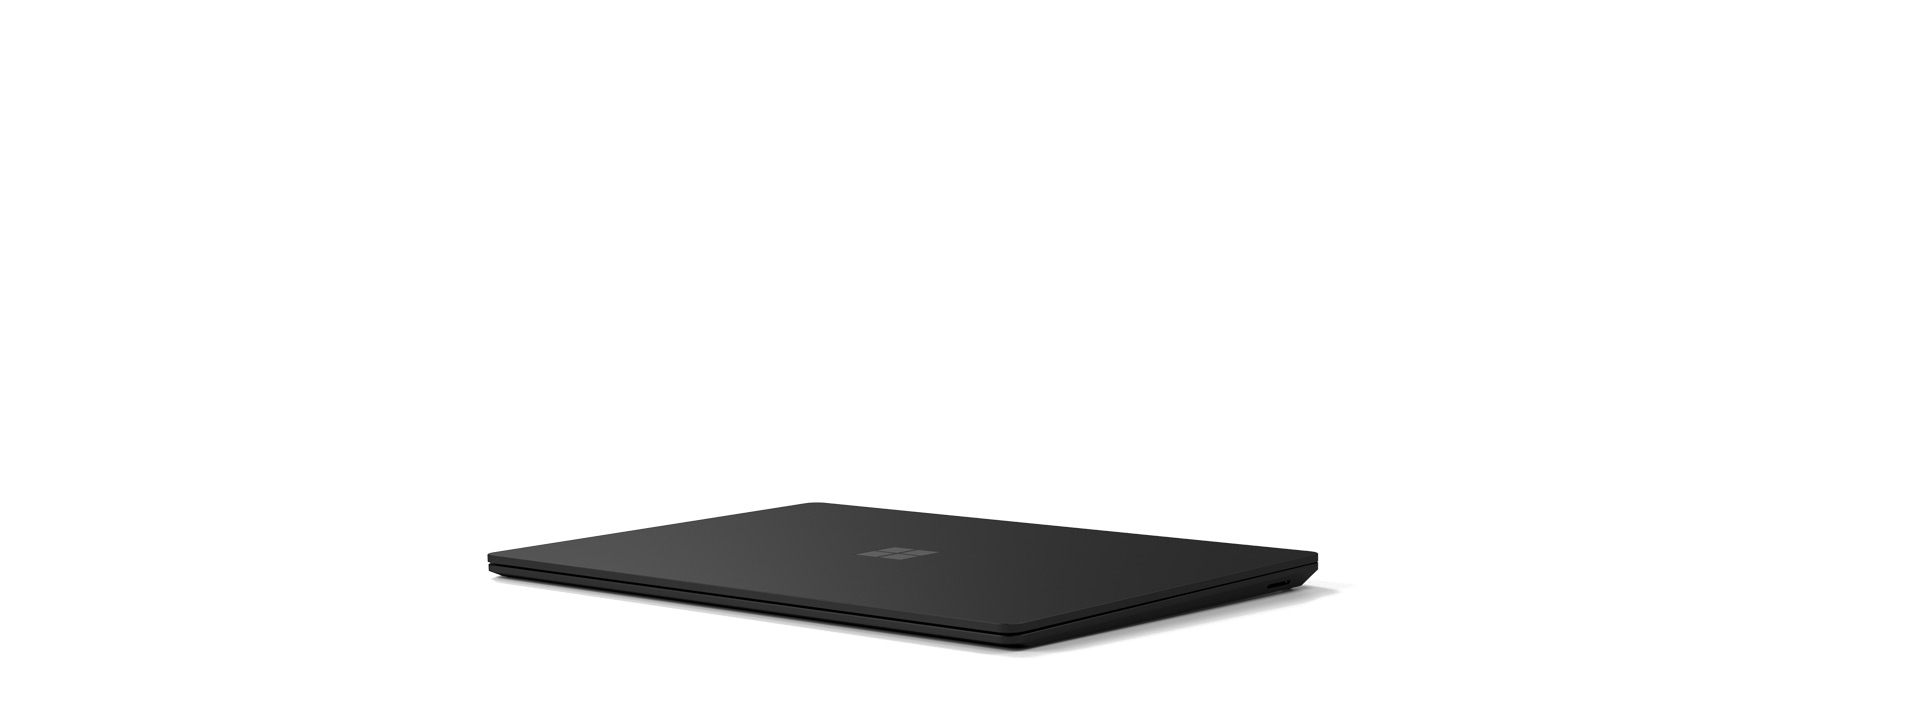 En Surface Laptop 4 visas i stängt läge.